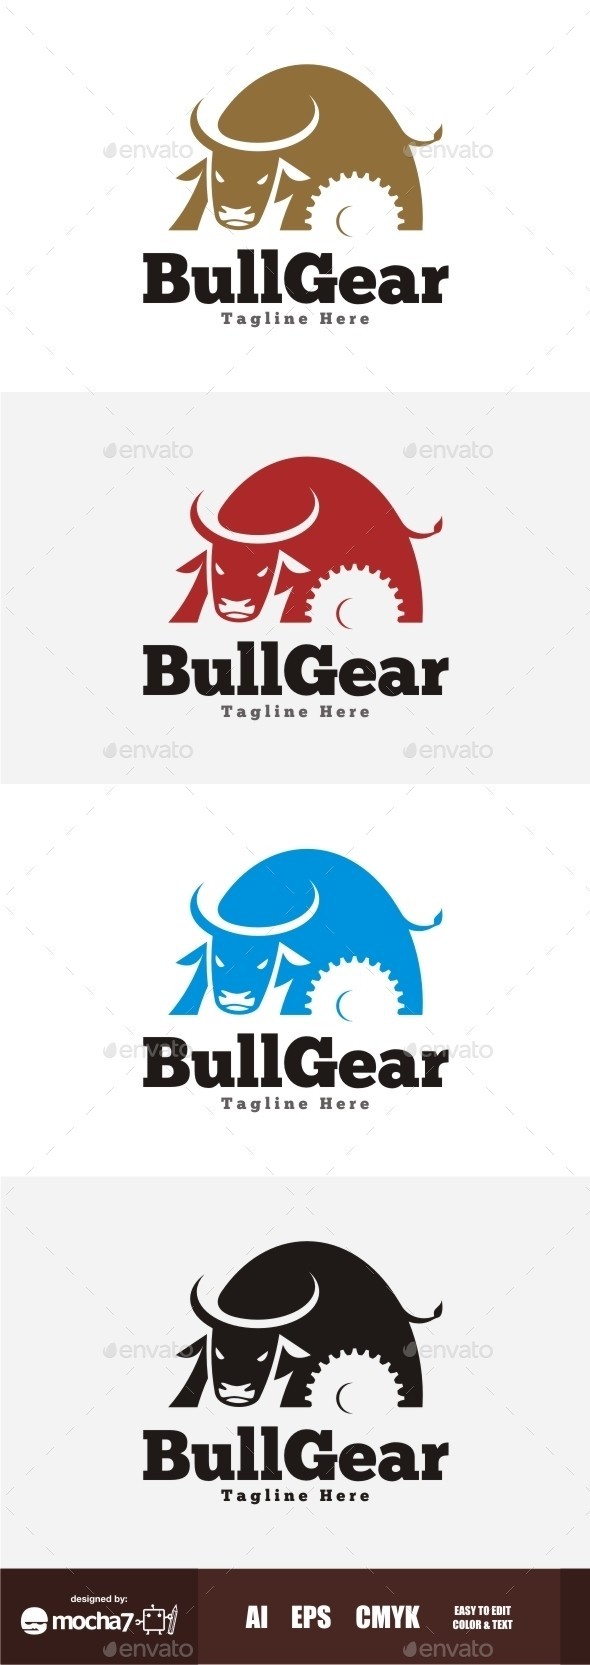 Bullgear 20logo